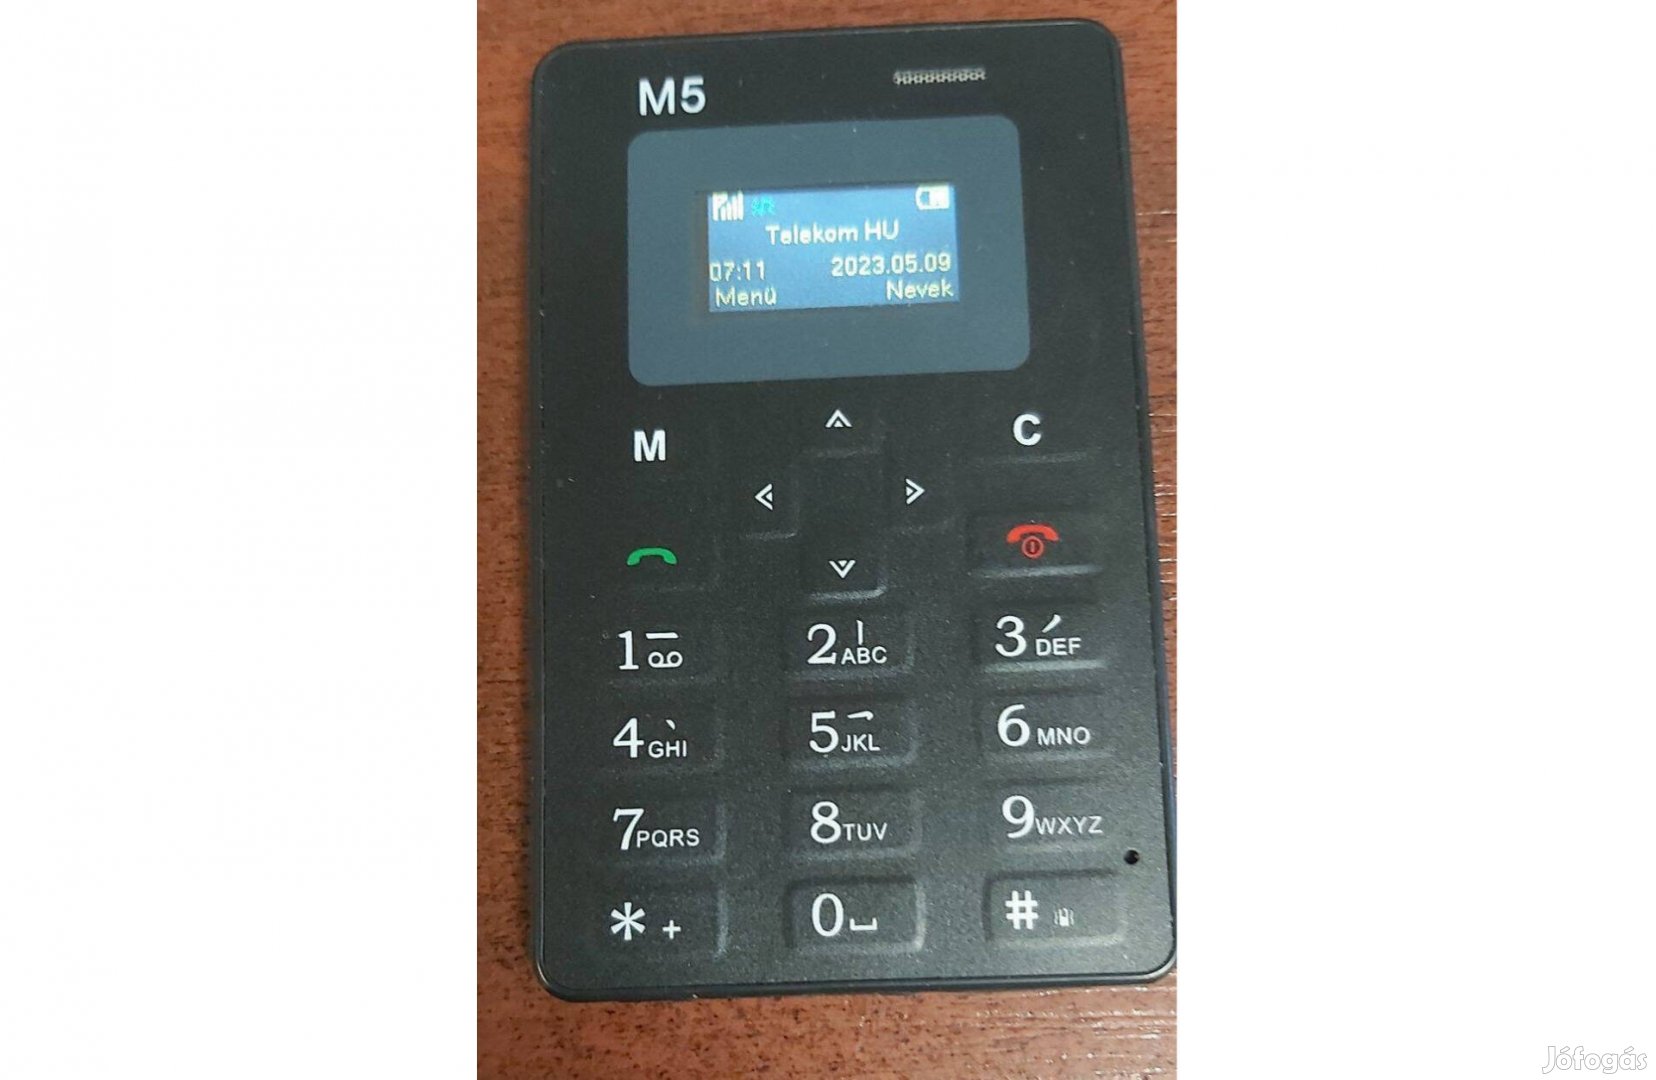 Mini független magyarnyelvü mobil telefon